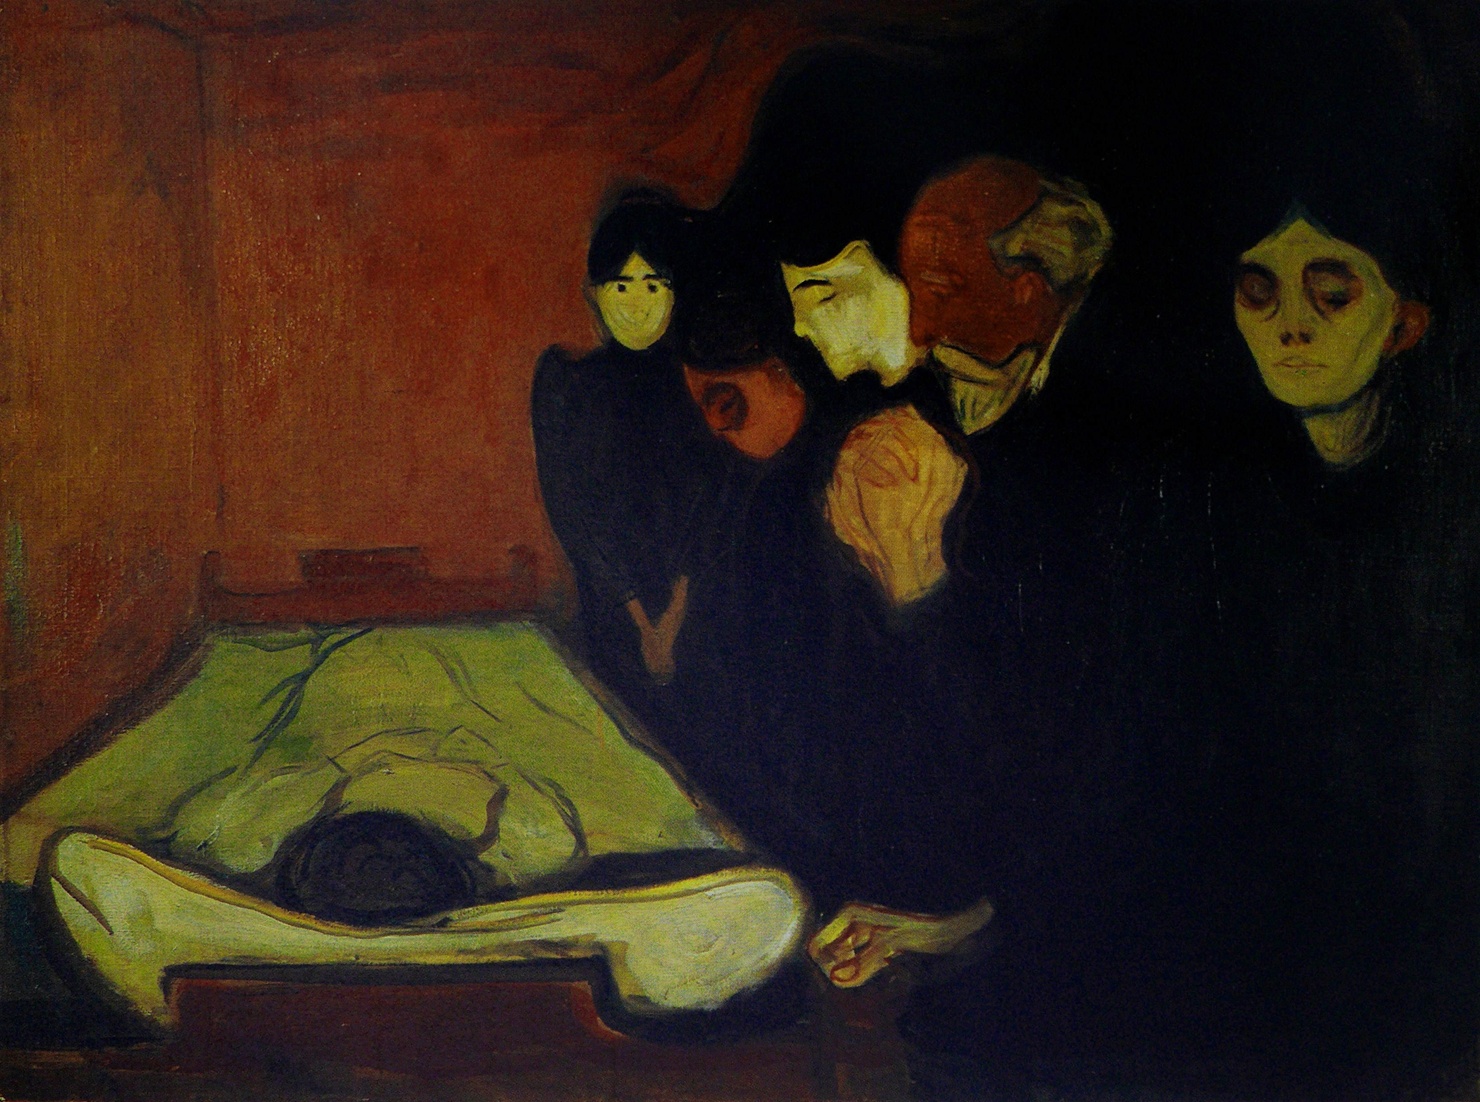 Por el lecho de muerte (fiebre) by Edvard Munch - 1893 - 60 x 80 cm Museo Munch